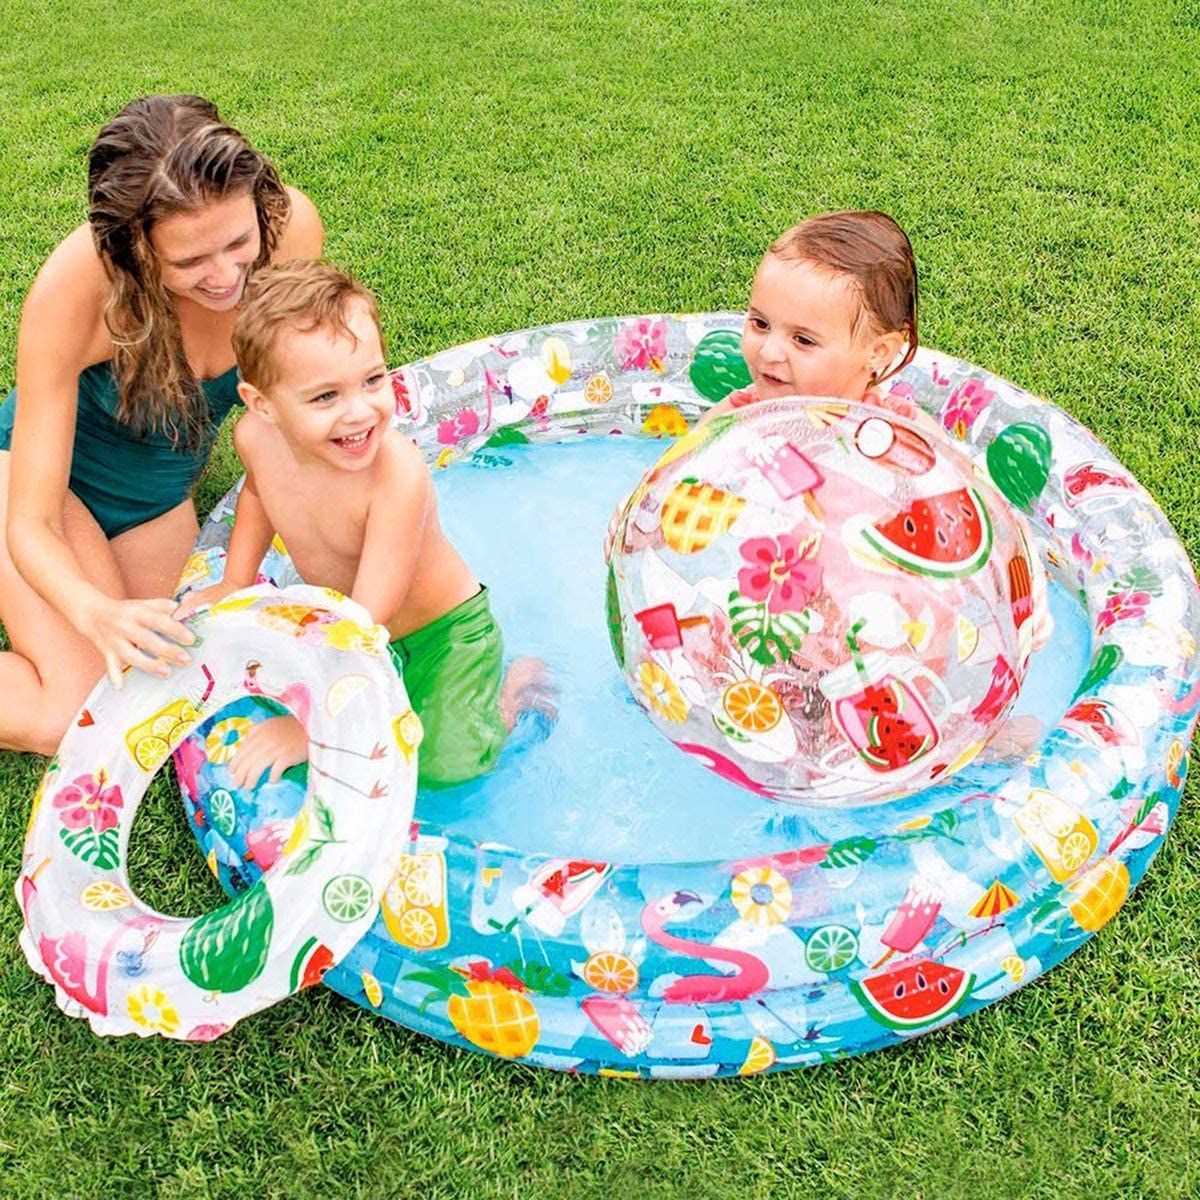 Piscina Hinchable para Niños con otra piscina central 279 x 36 cm.